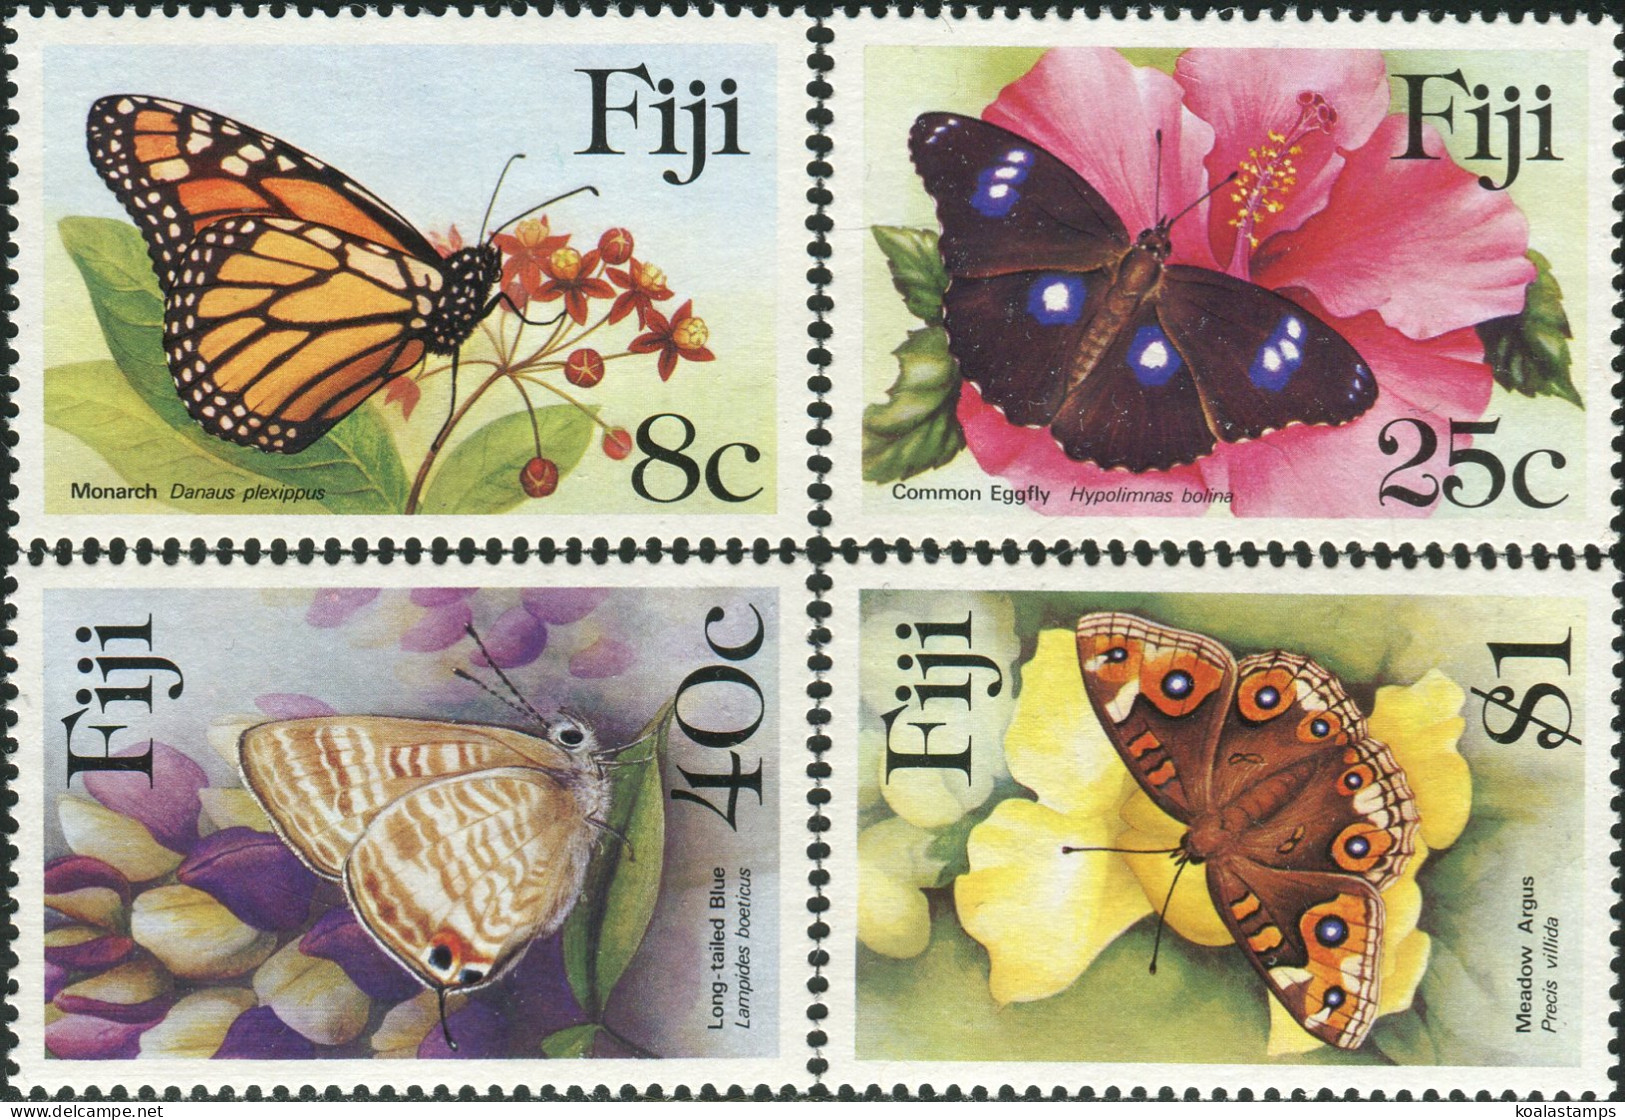 Fiji 1985 SG693-696 Butterflies Set MNH - Fiji (1970-...)